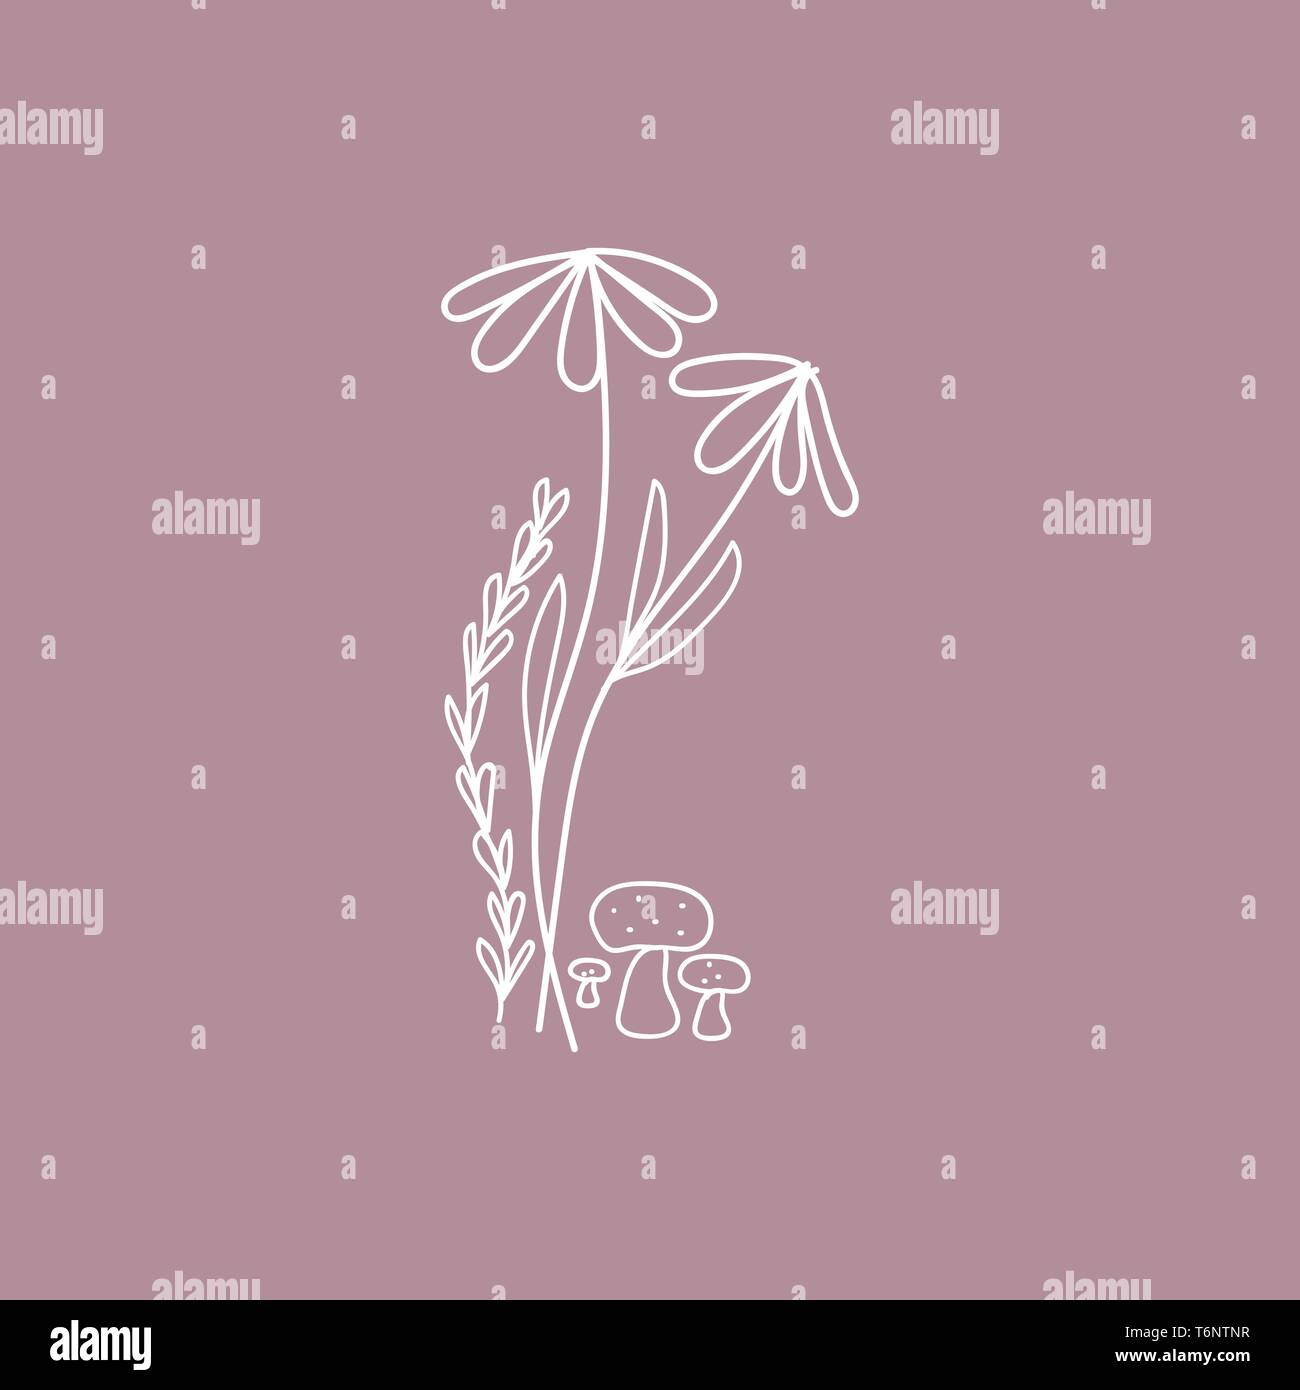 El minimalista básica forma de flores y setas sin decoración en color rosa de fondo el color de dibujo o ilustración vectorial Ilustración del Vector